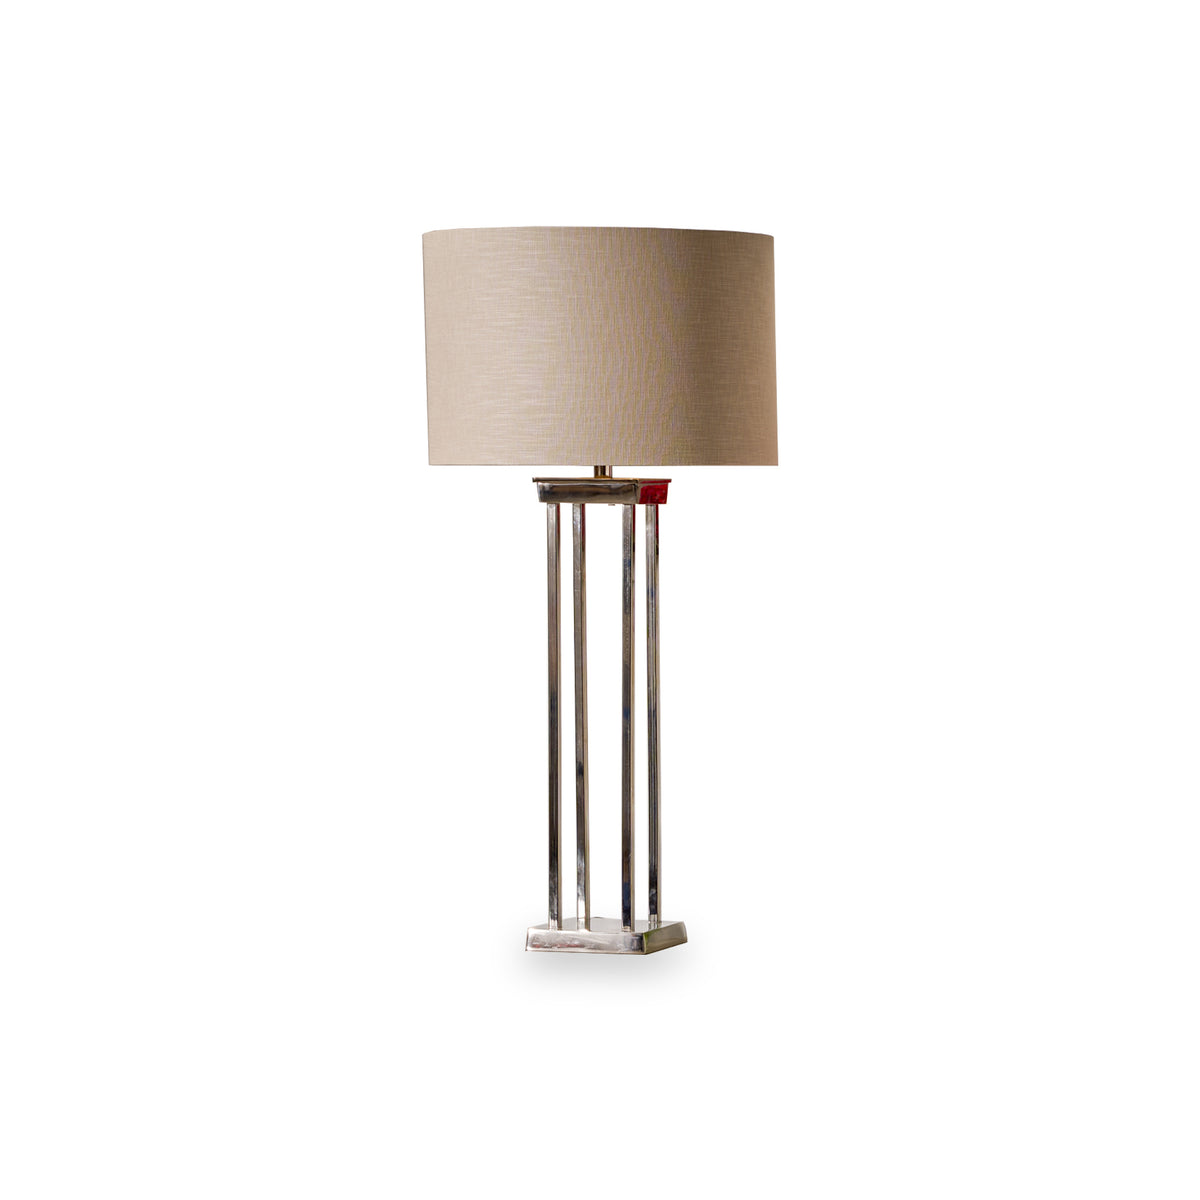 Langston Nickel Metal Column Table Lamp from Roseland Furniture